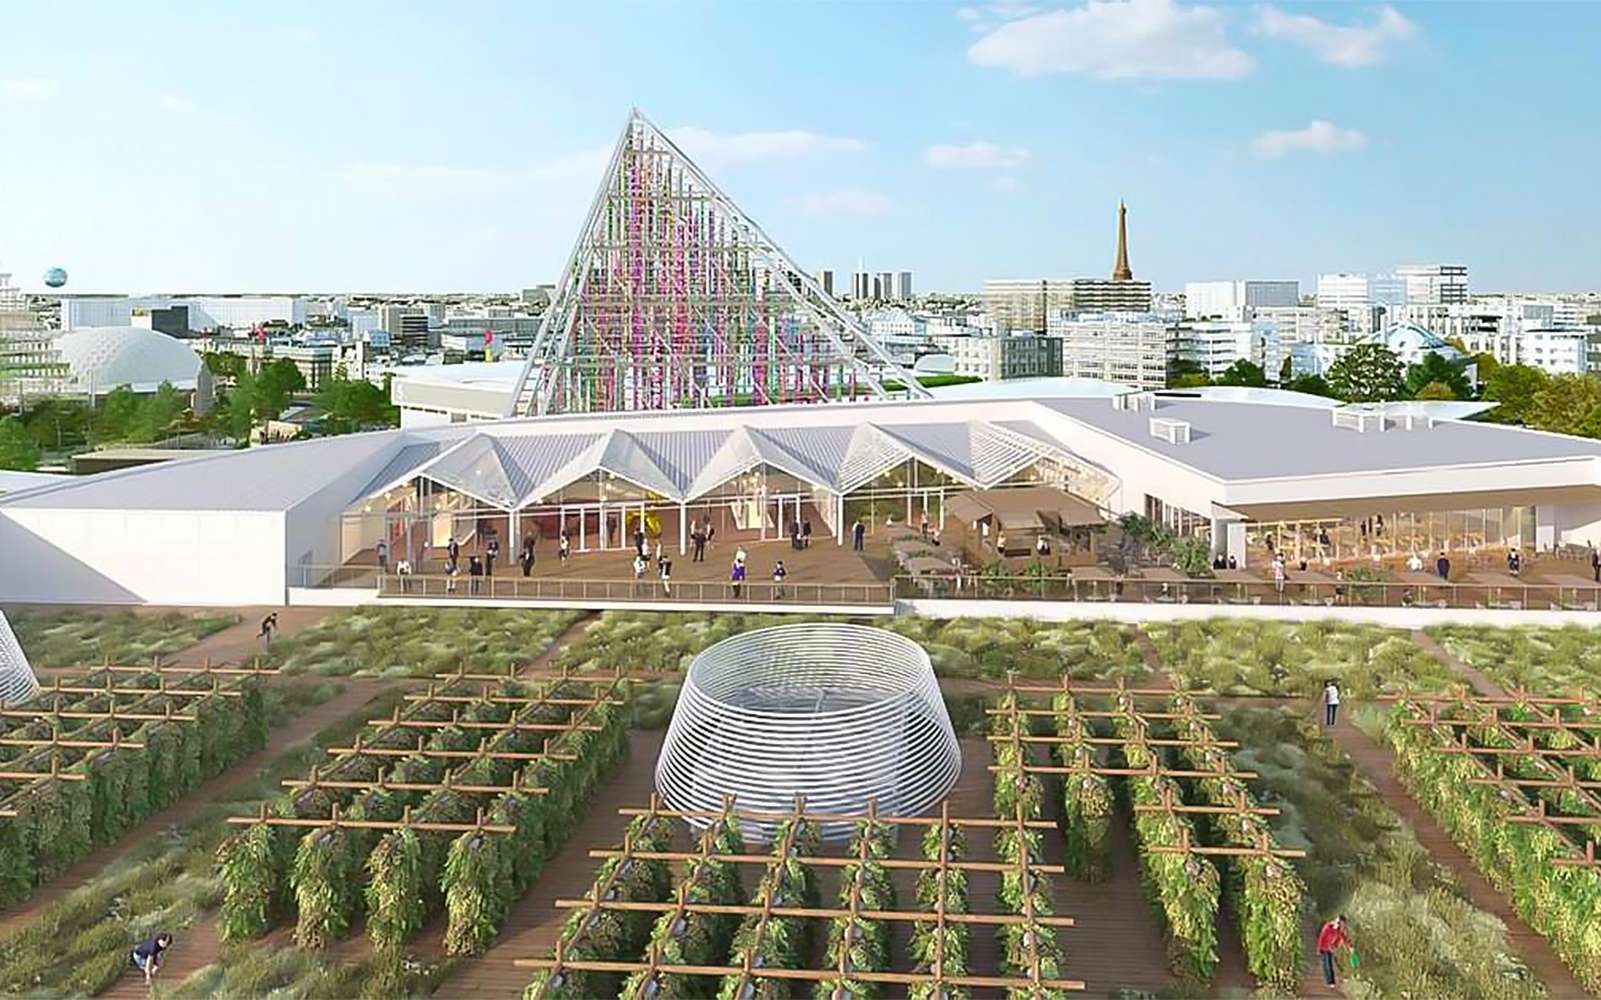 La plus grande ferme urbaine en Europe sera sur un toit de Paris